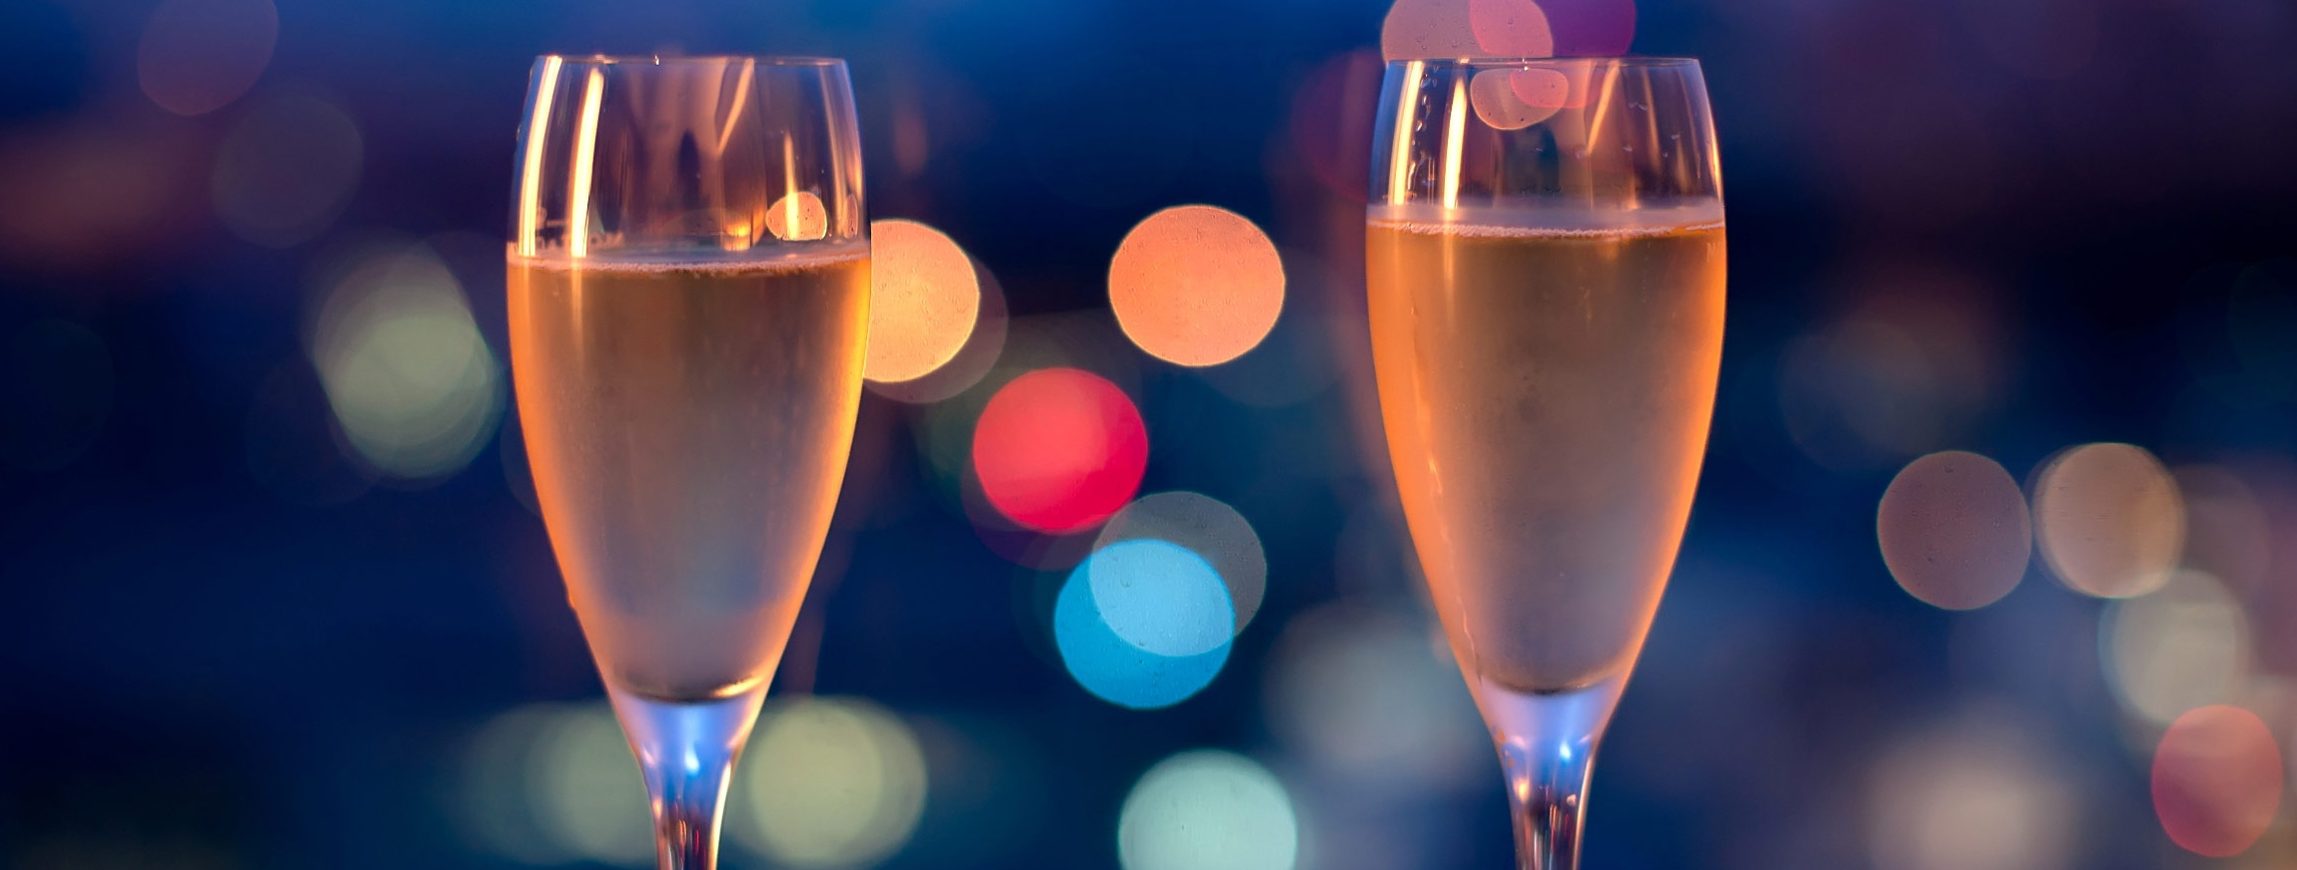 champagne nieuwjaar achtergrond 2016